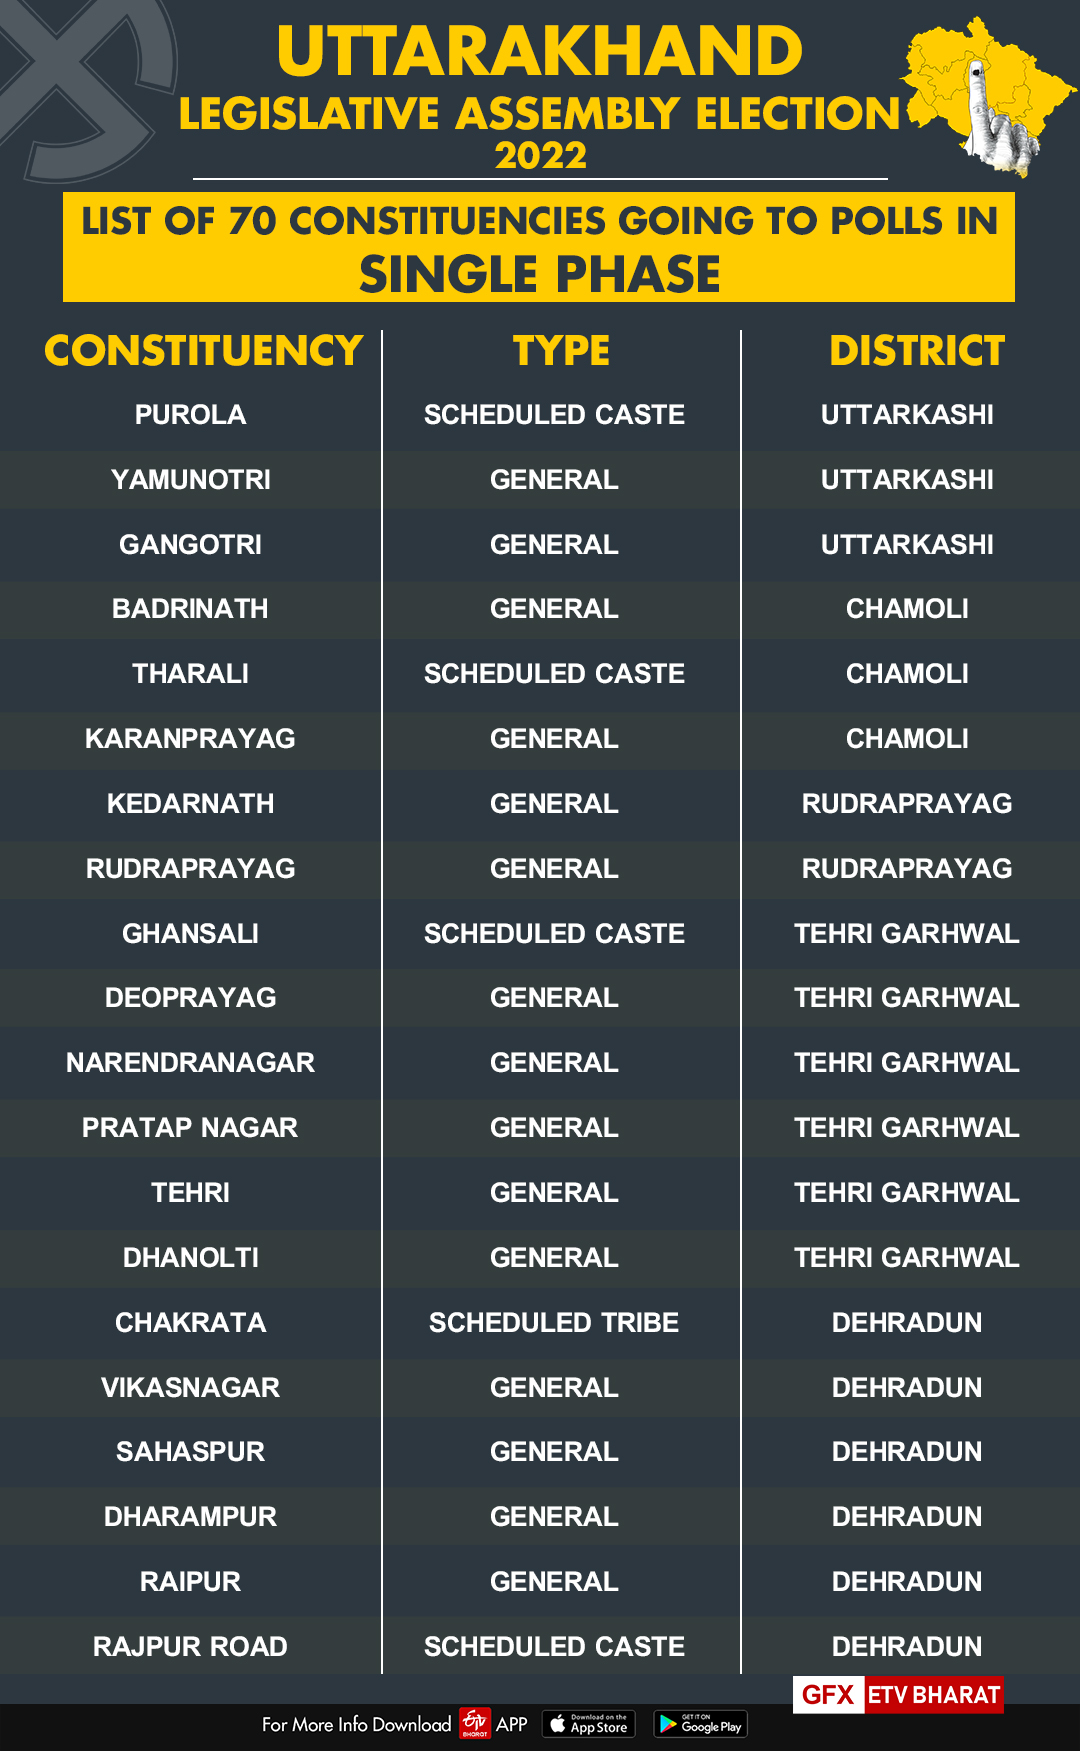 List of constituencies